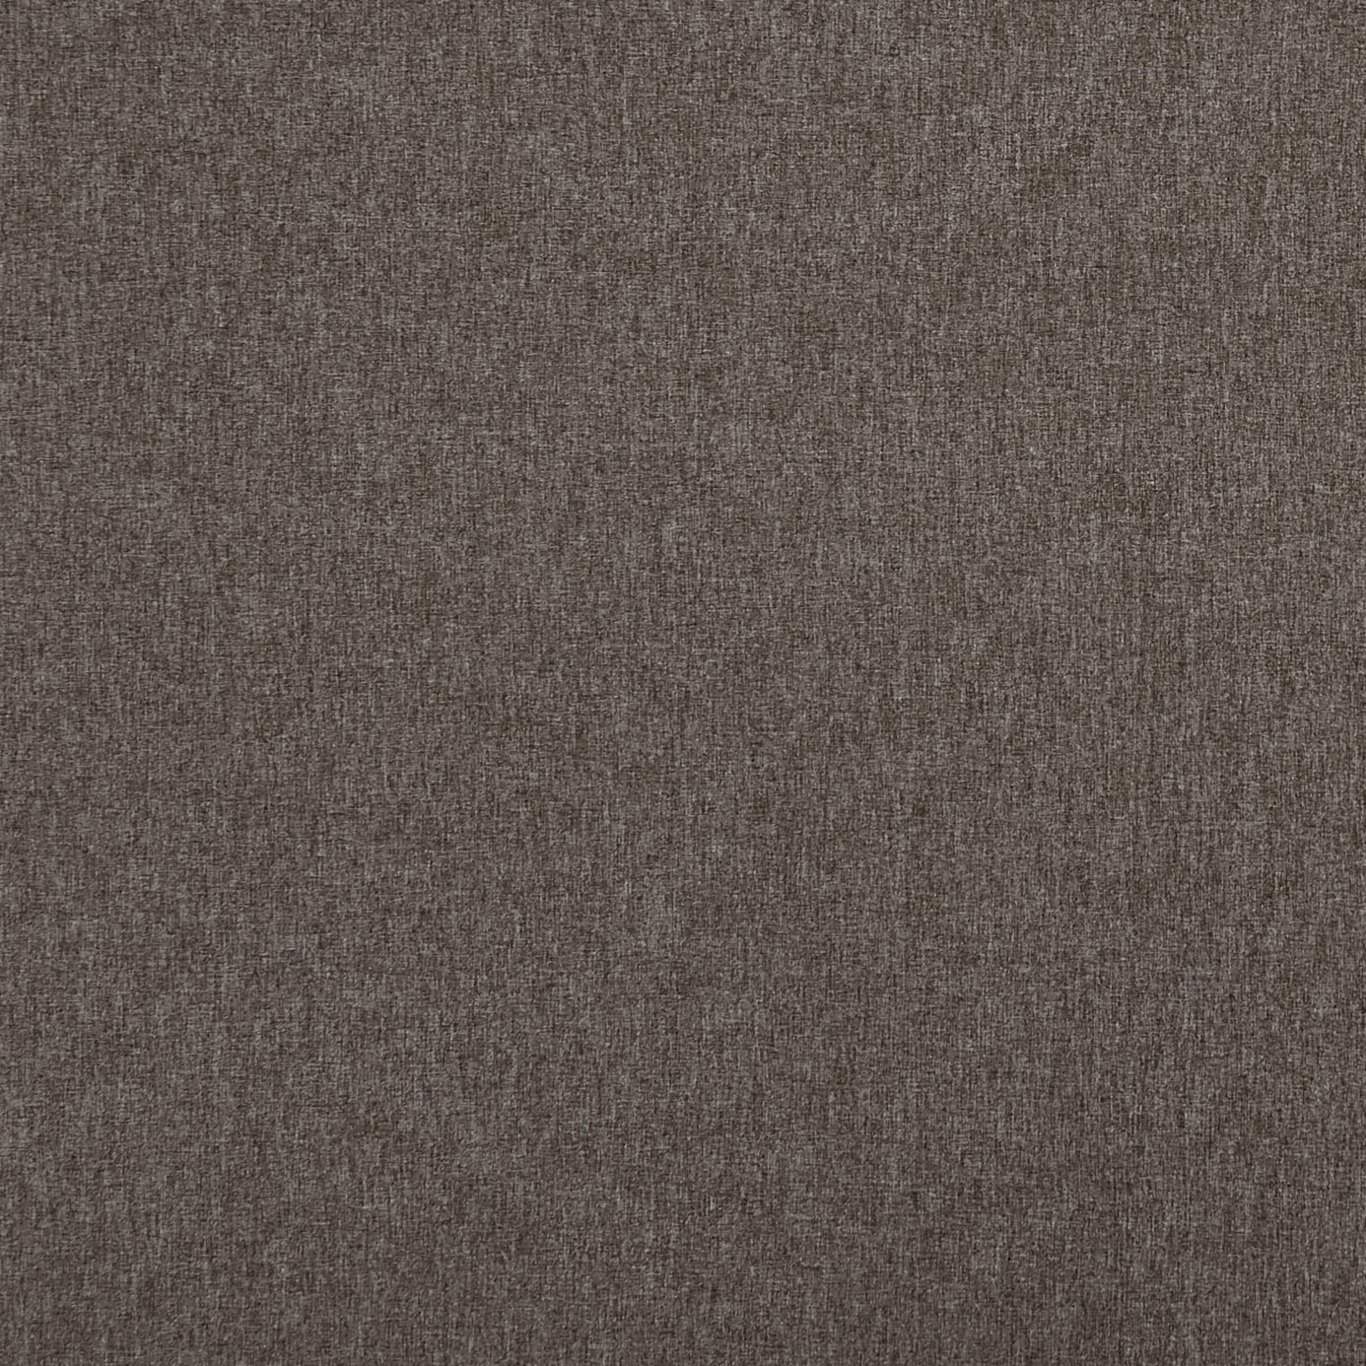 Highlander Espresso Fabric by CNC